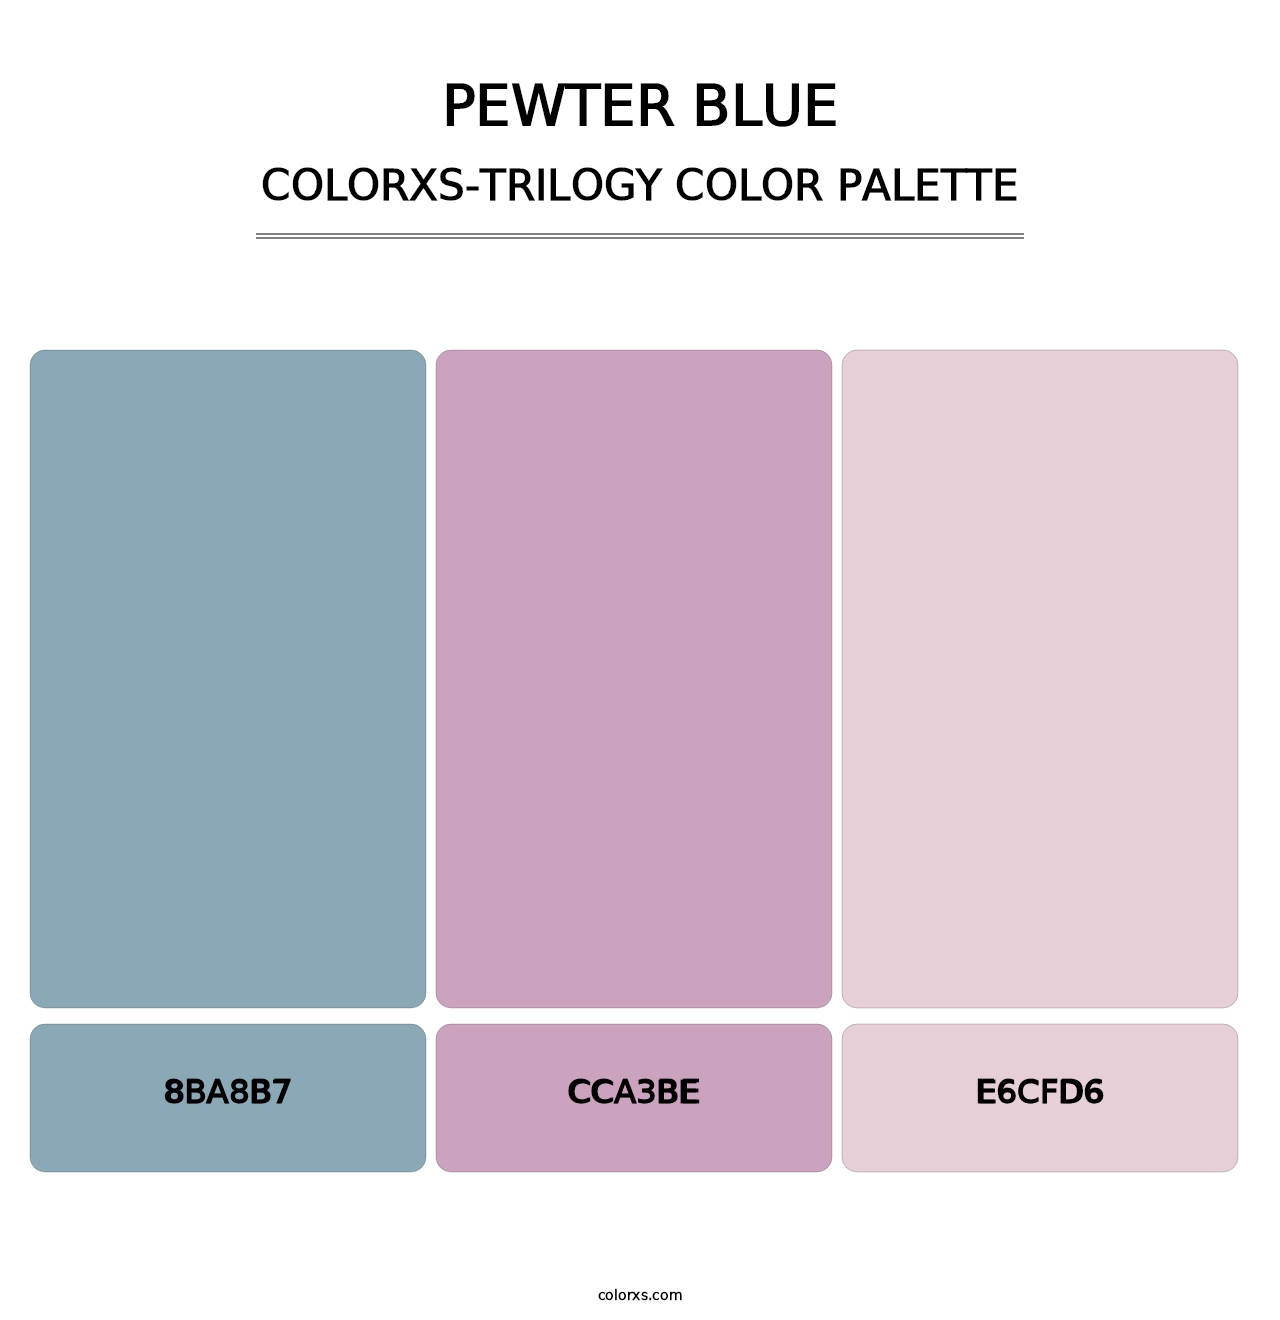 Pewter Blue - Colorxs Trilogy Palette